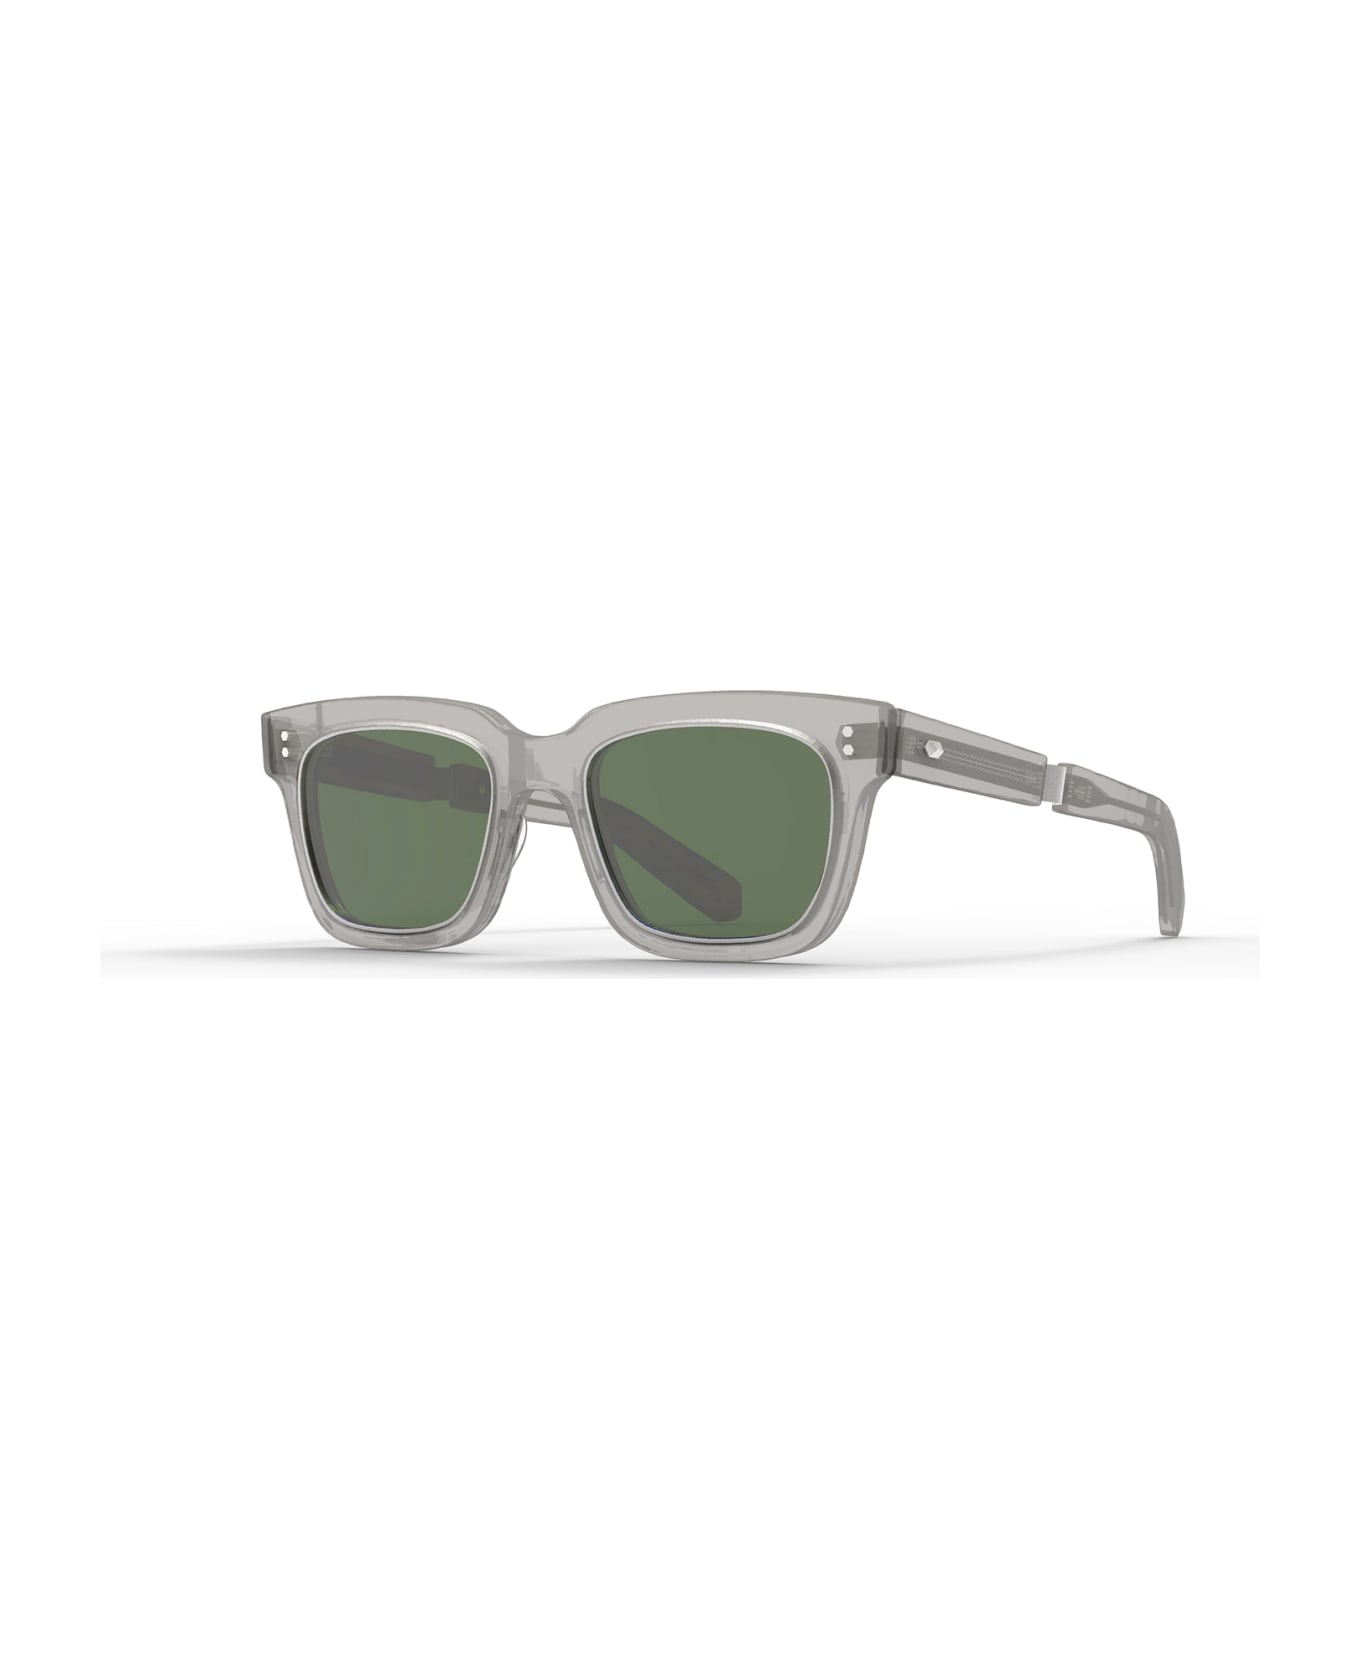 Mr. Leight Arnie S Grey Crystal-matte Platinum Sunglasses - Grey Crystal-Matte Platinum